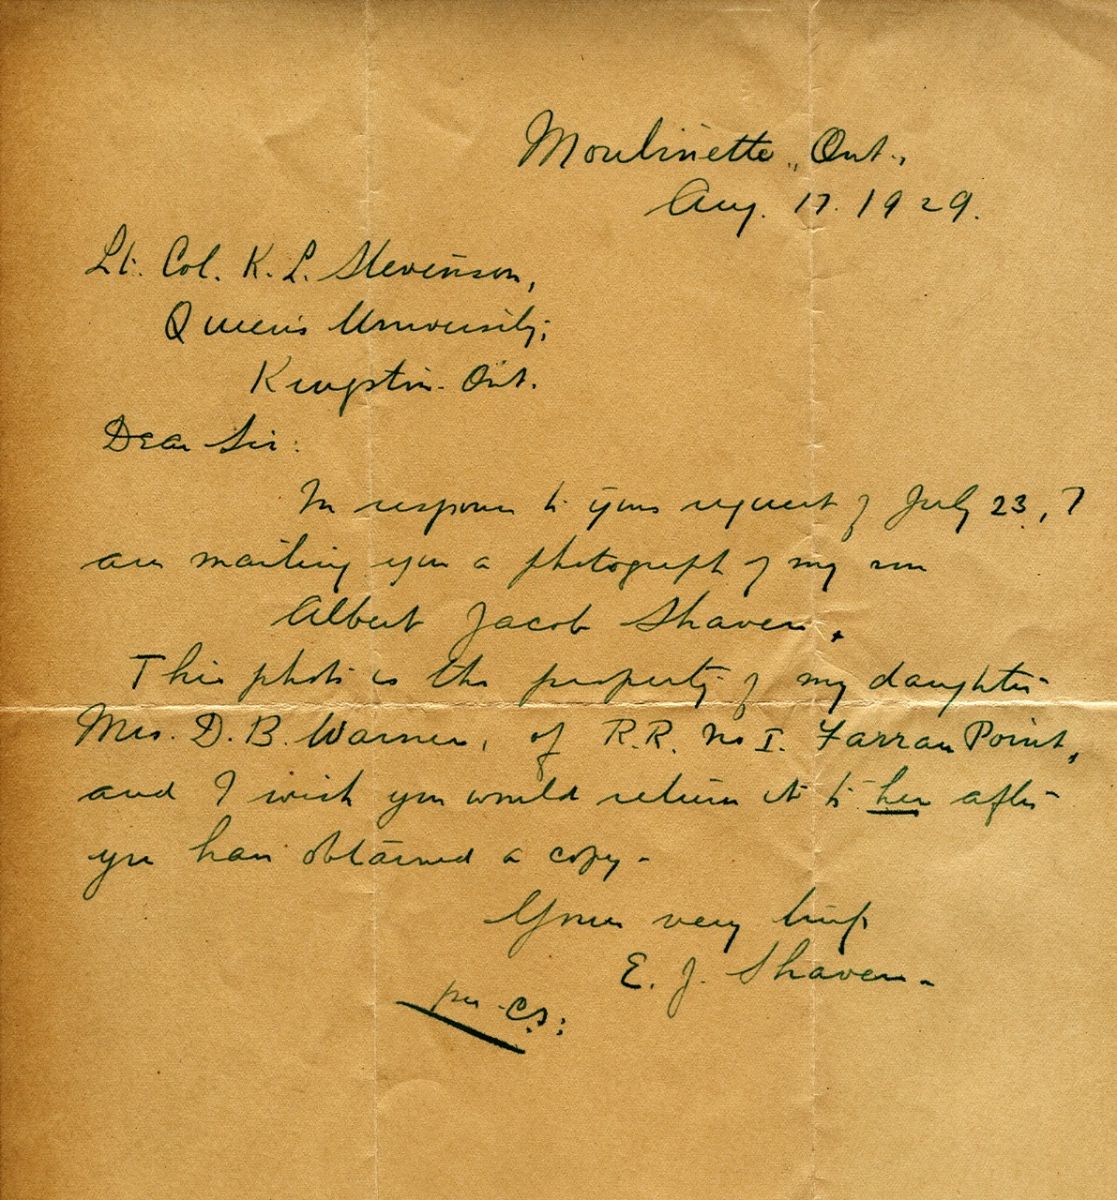 Letter from E.J. Shaver to Lt. Col. K.L. Stevenson, 17th August 1929